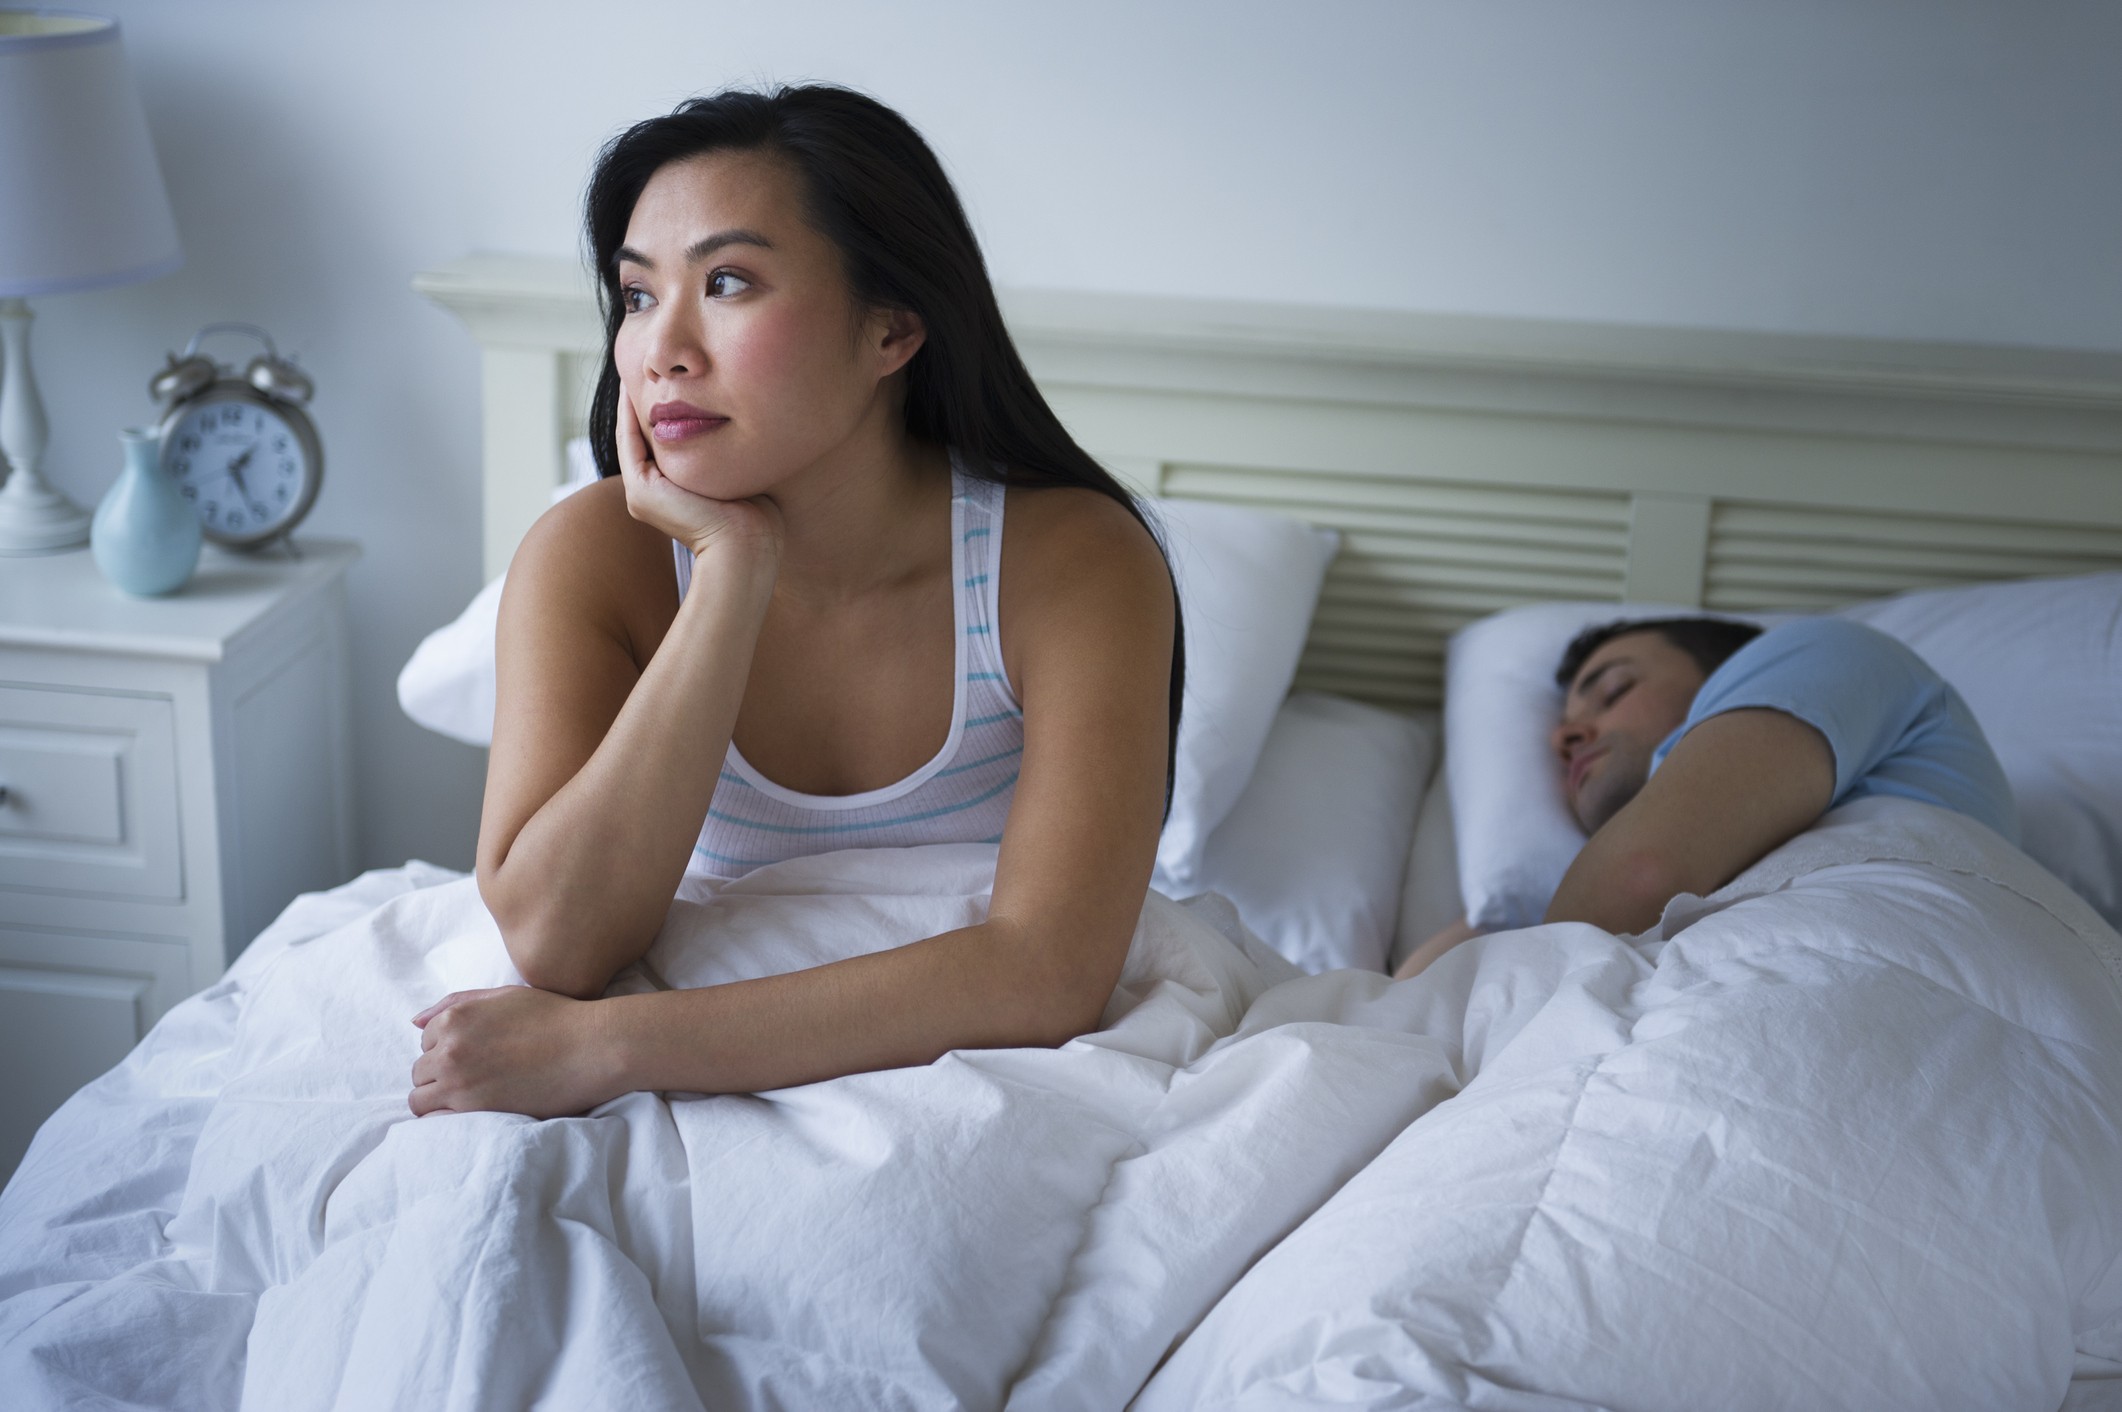 Mulheres perdem três horas de sono por noite devido ao parceiro, aponta pesquisa (Foto: Getty Images)